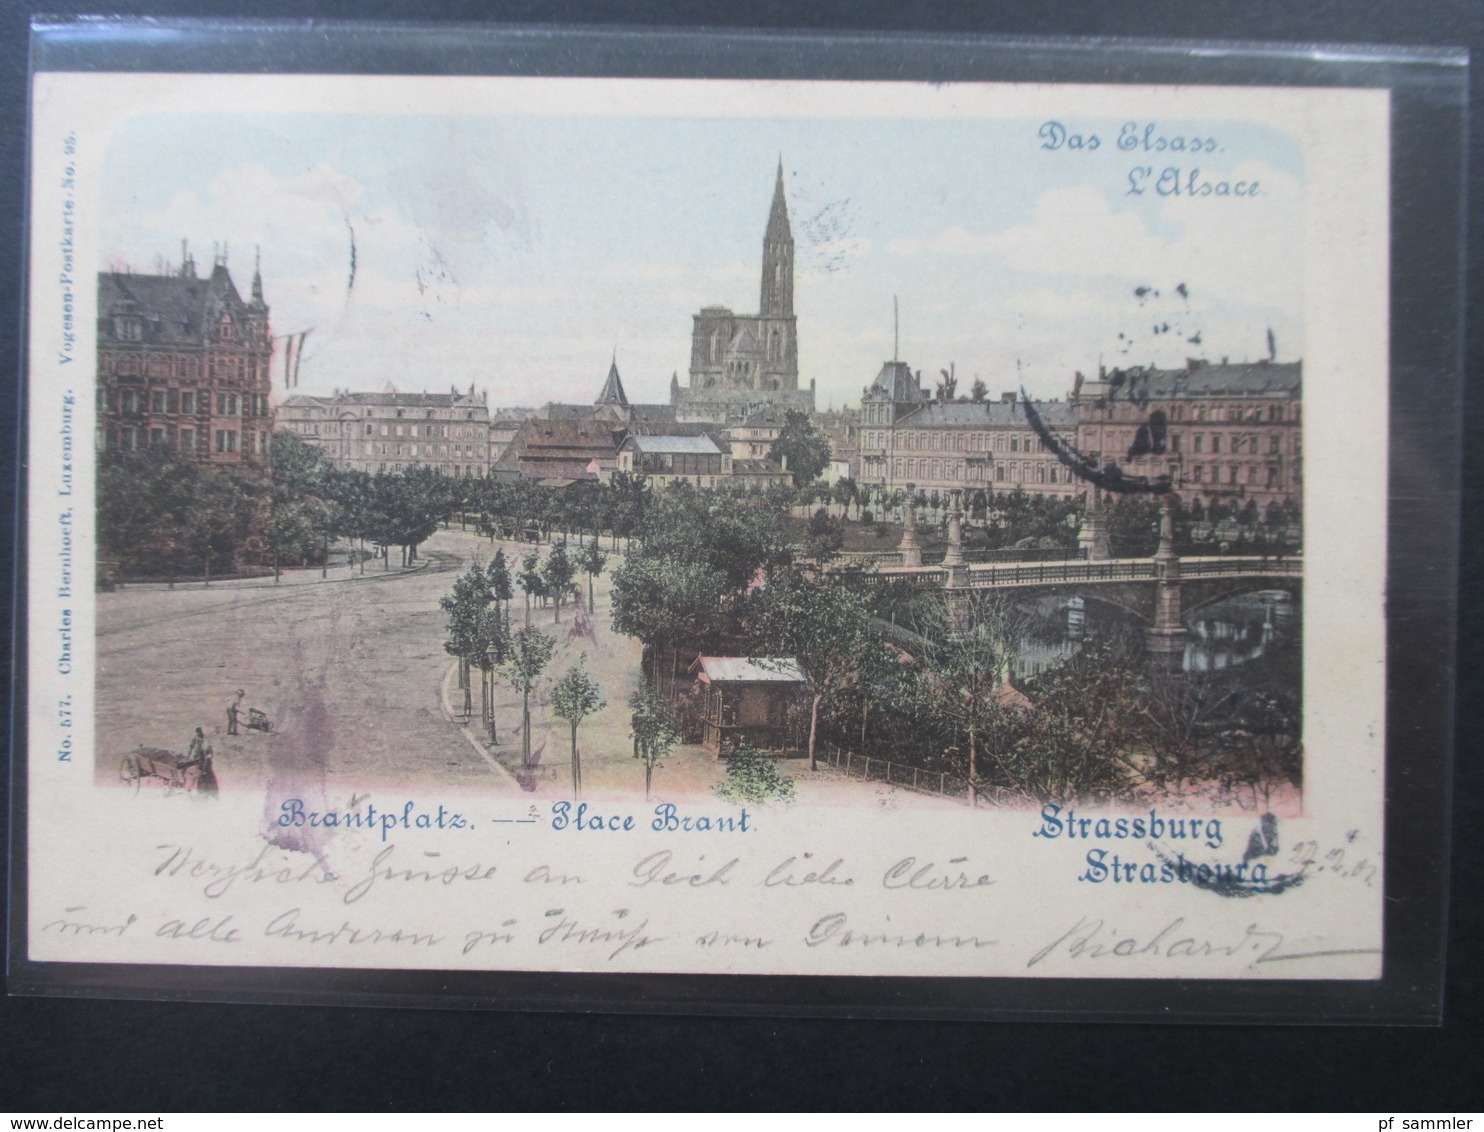 AK Elsass 1901 Das Elsass Strassburg Brantplatz - Place Brant. Charles Bernhoeft Luxemburg - Elsass